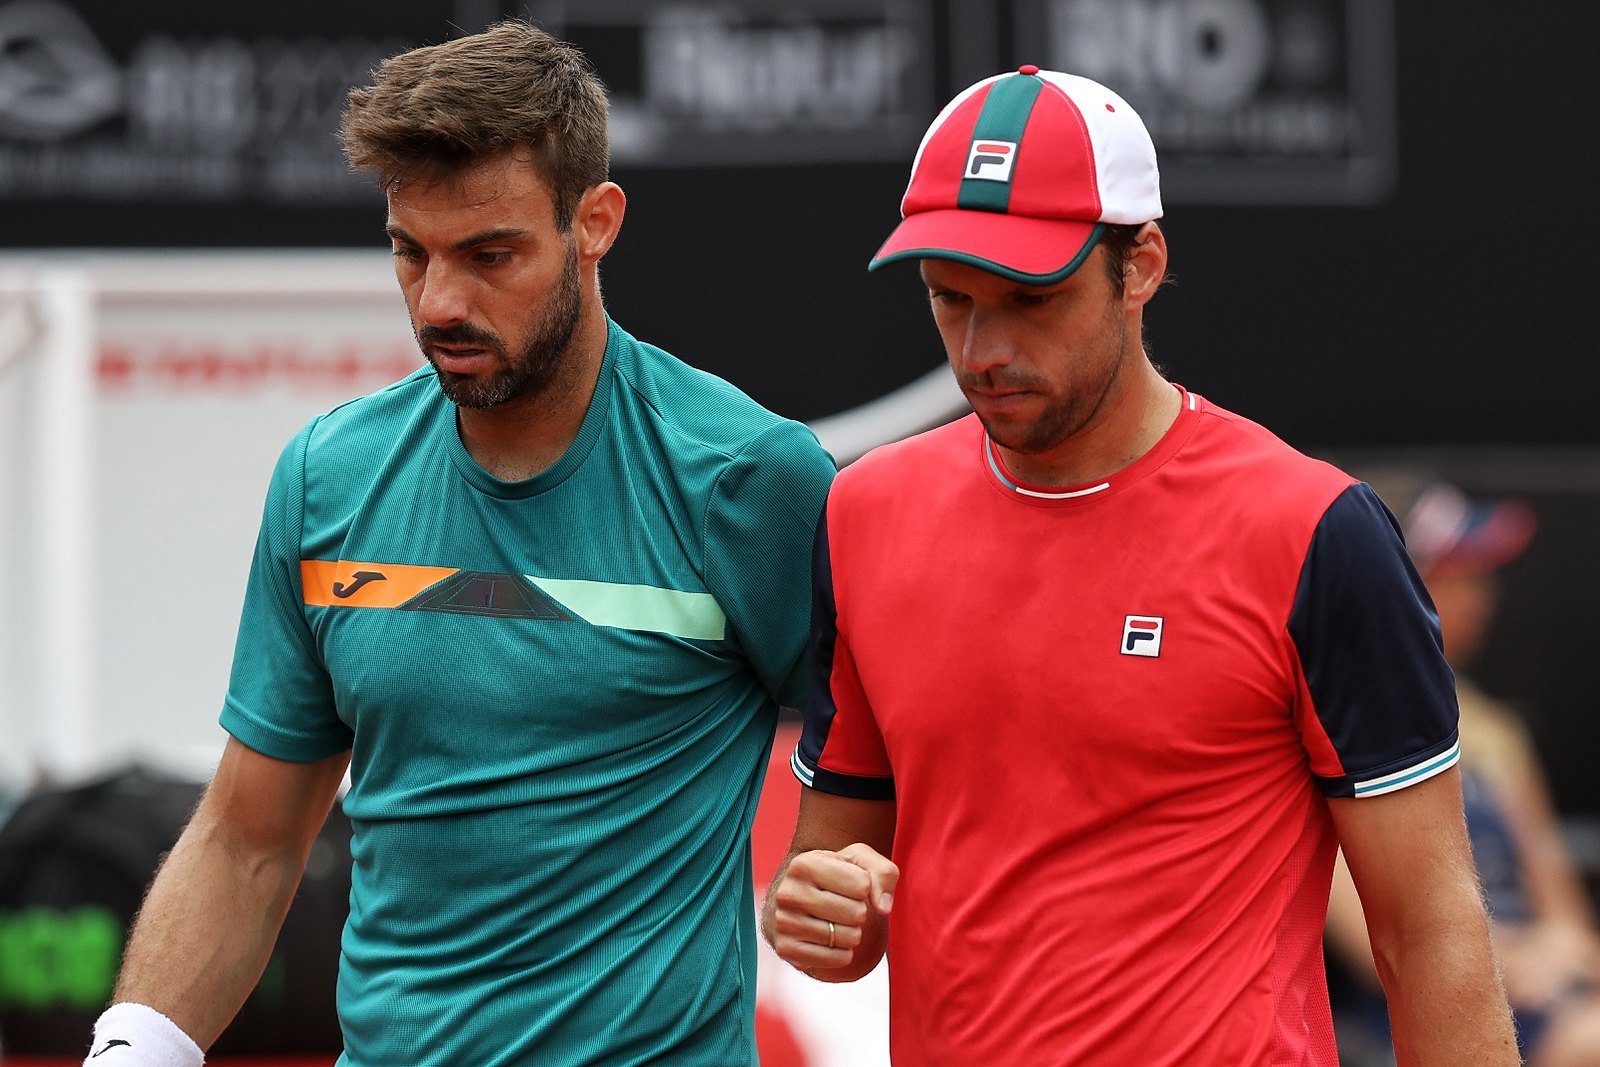 Tenis: Zeballos y Granollers pasaron a las semifinales del Masters de Montecarlo